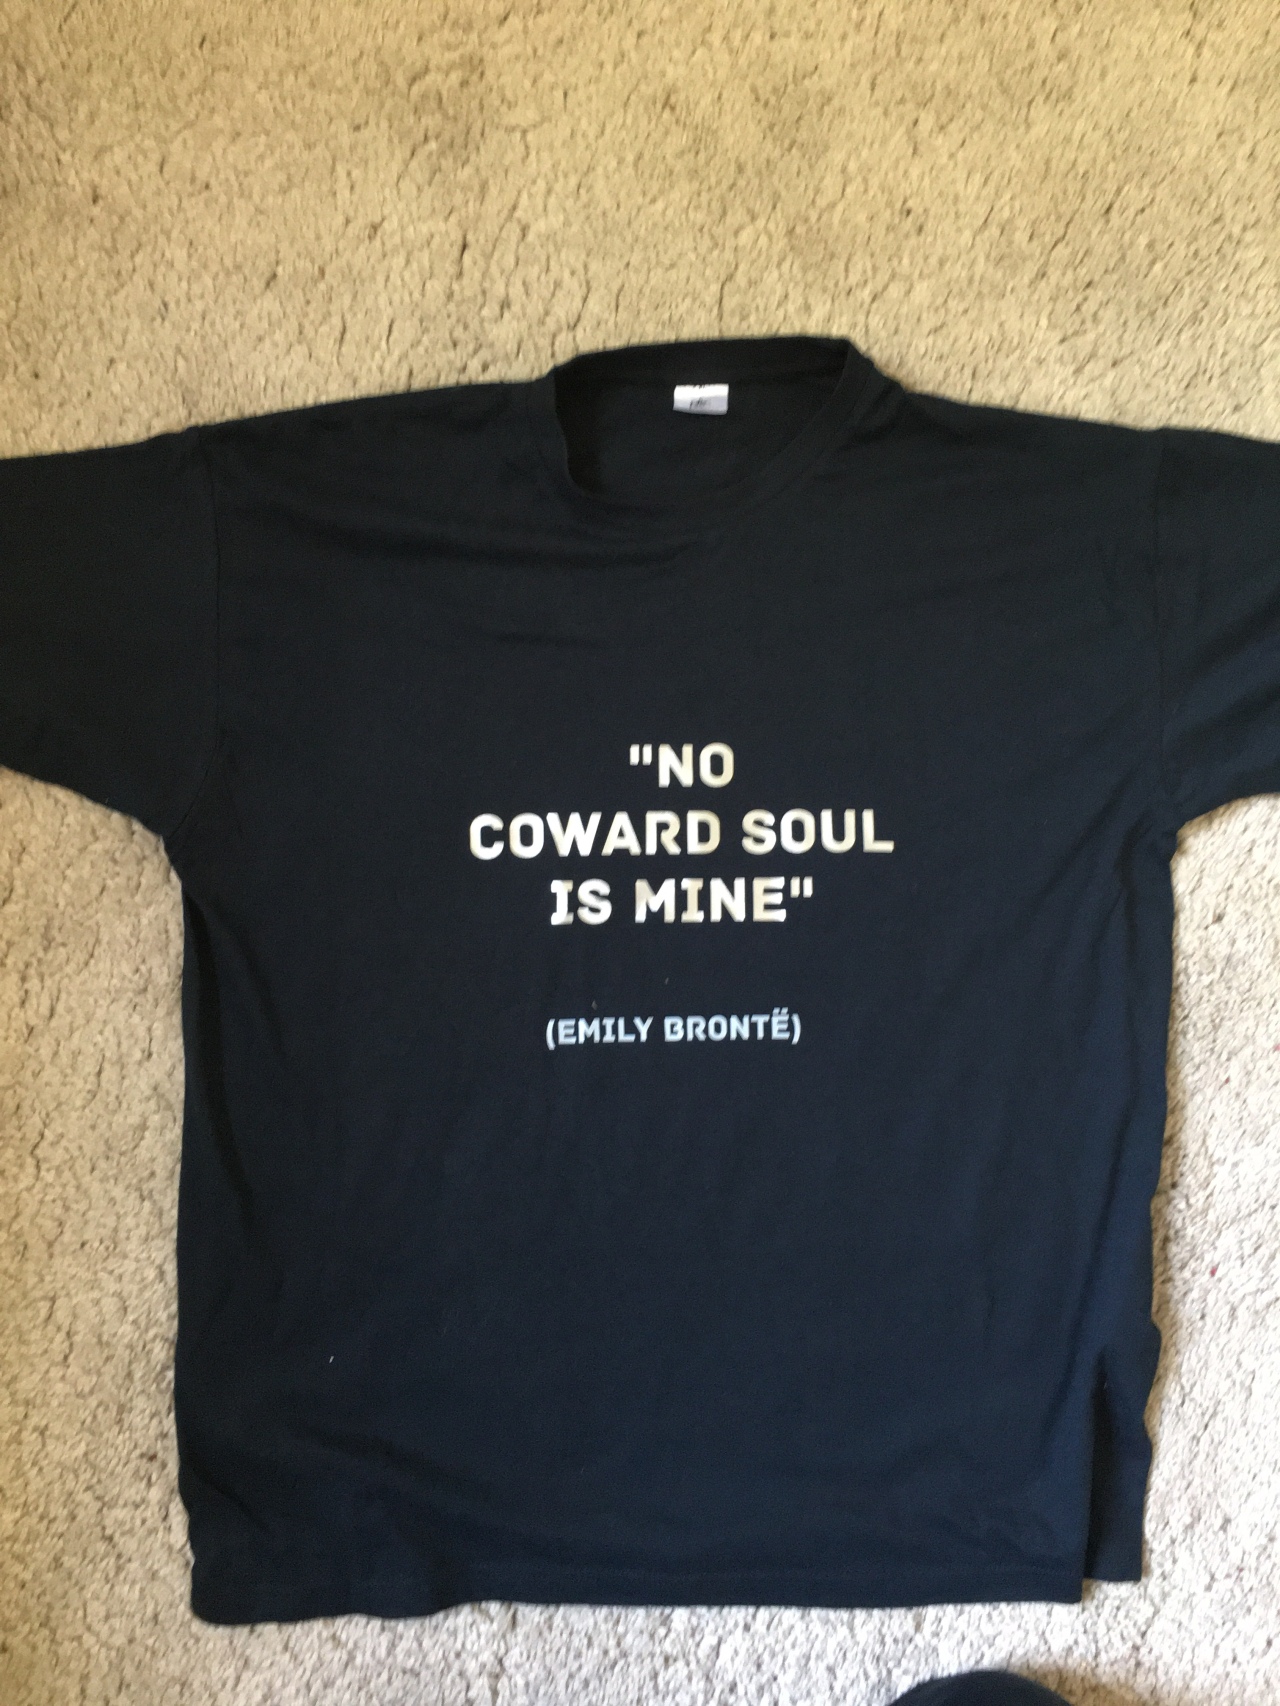 No coward Soul is mine